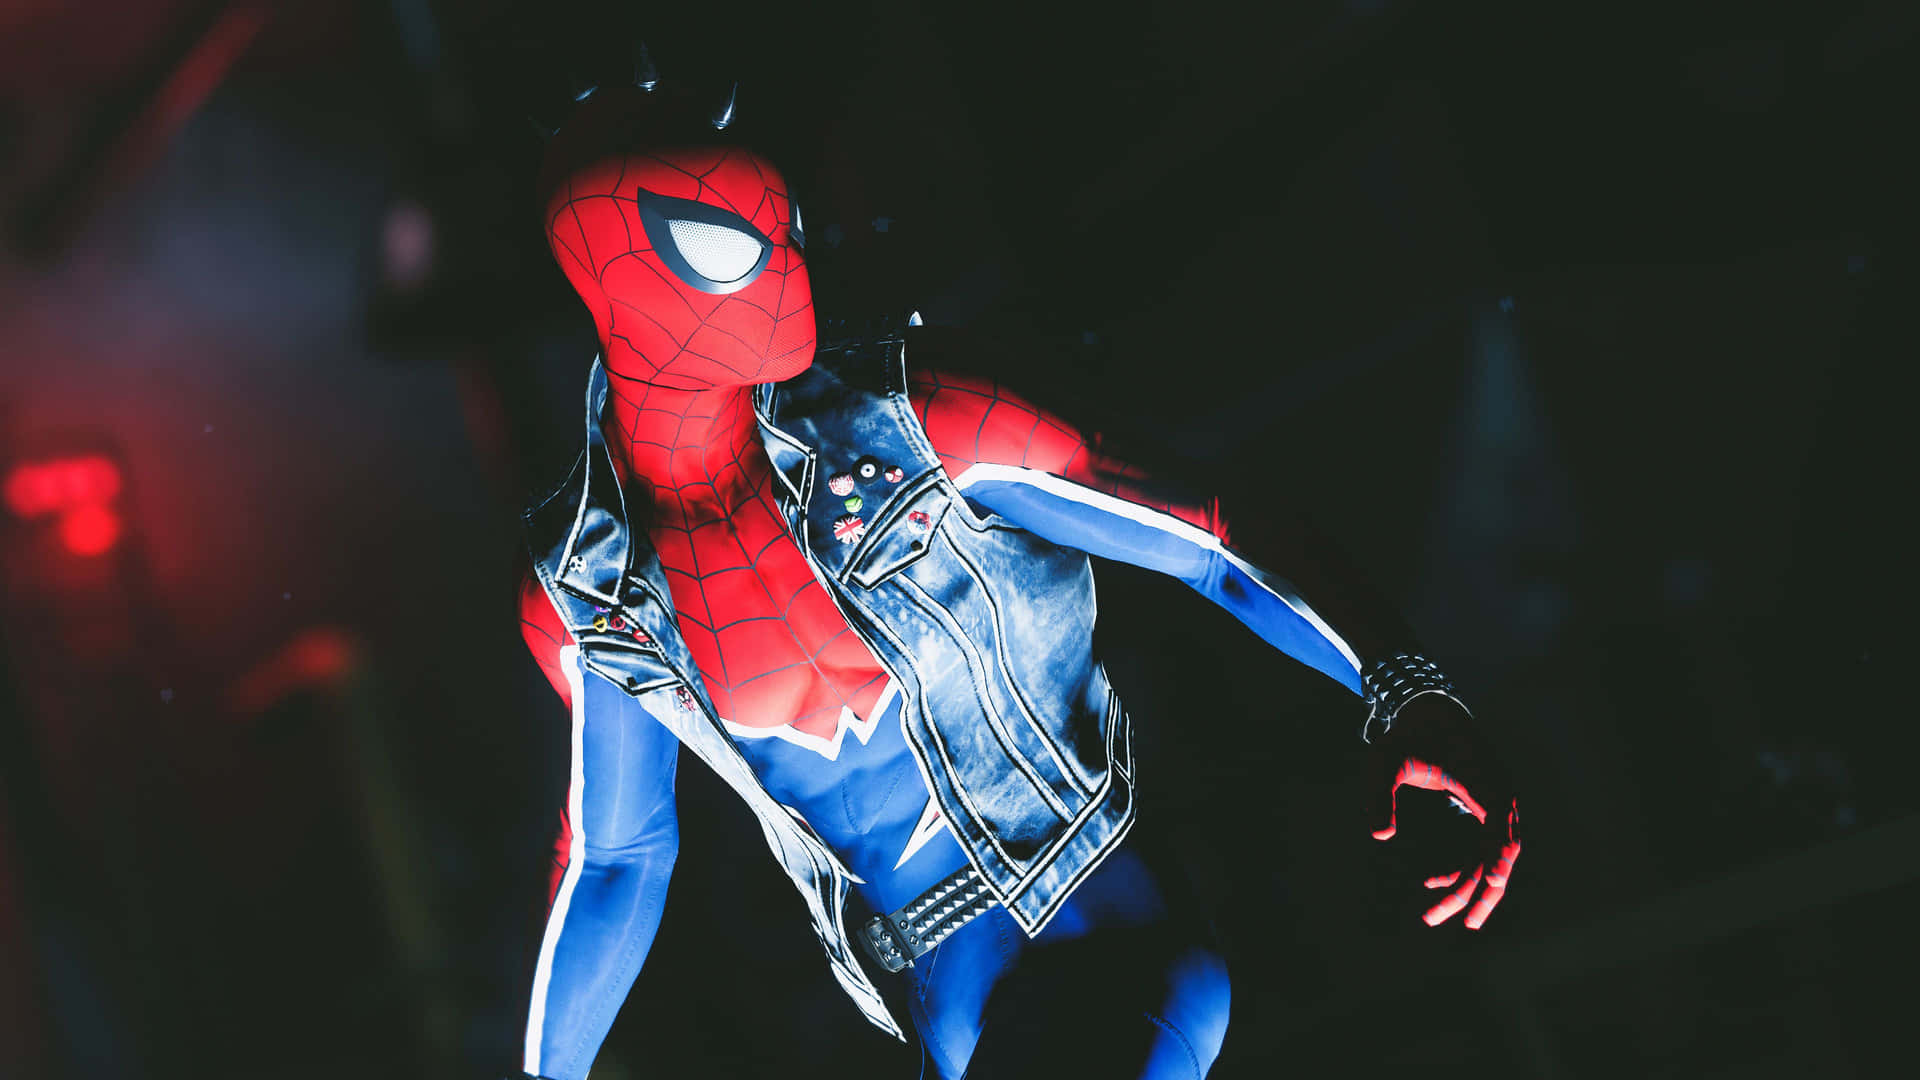 Spider Punkin Action Wallpaper